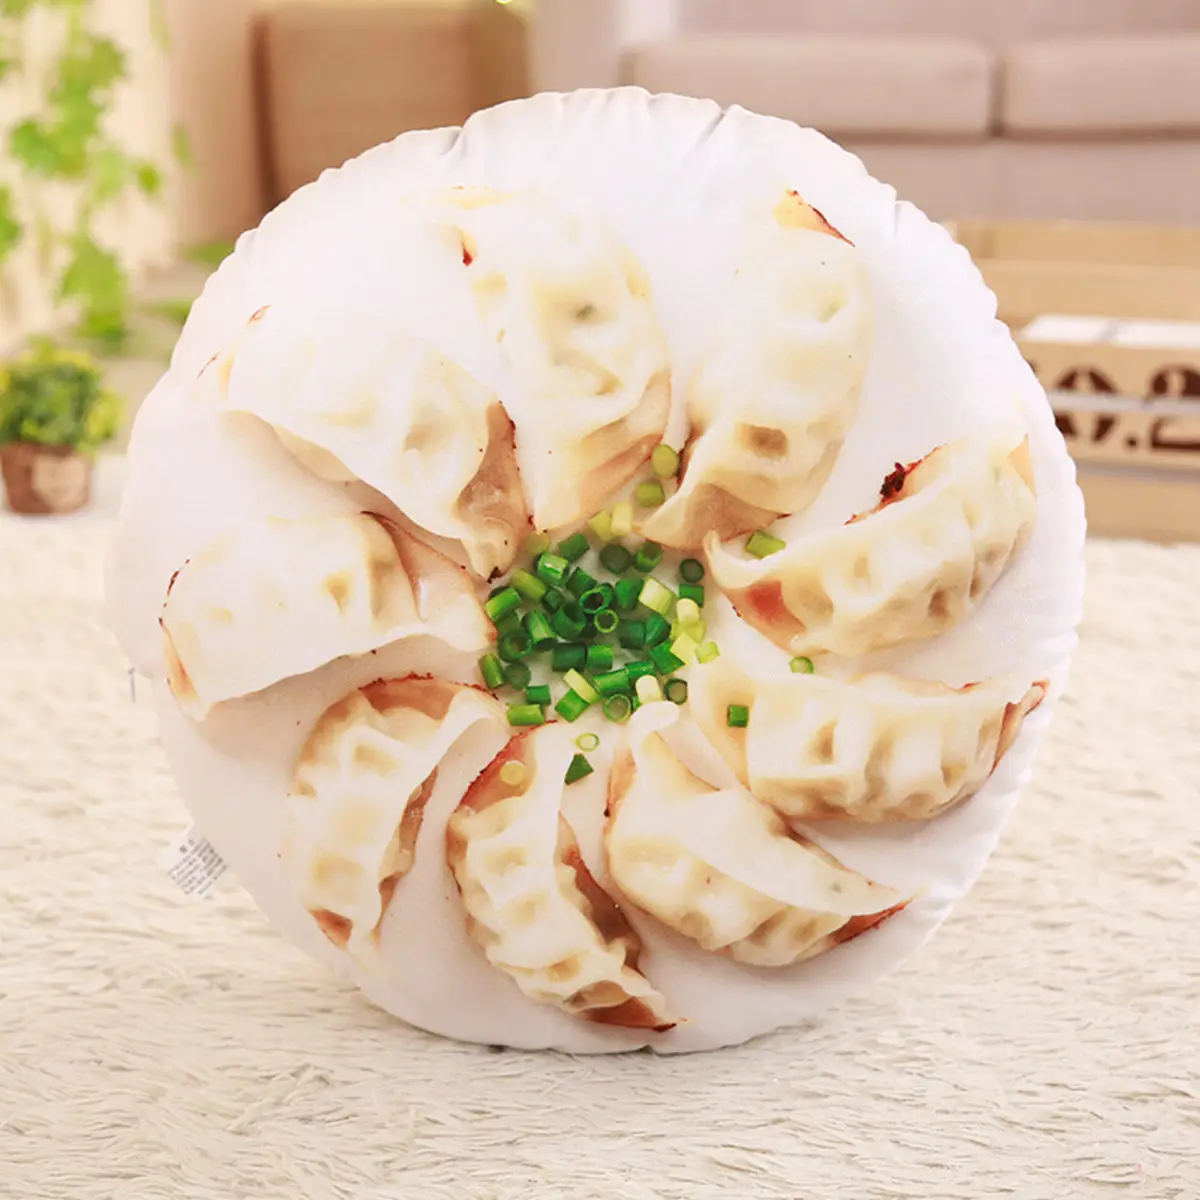 Большая подушка с 3D принтом, имитирующая китайские закуски, пельменей Liangpi, Baozi, новинка, подарки для детей - Цвет: jian jiao